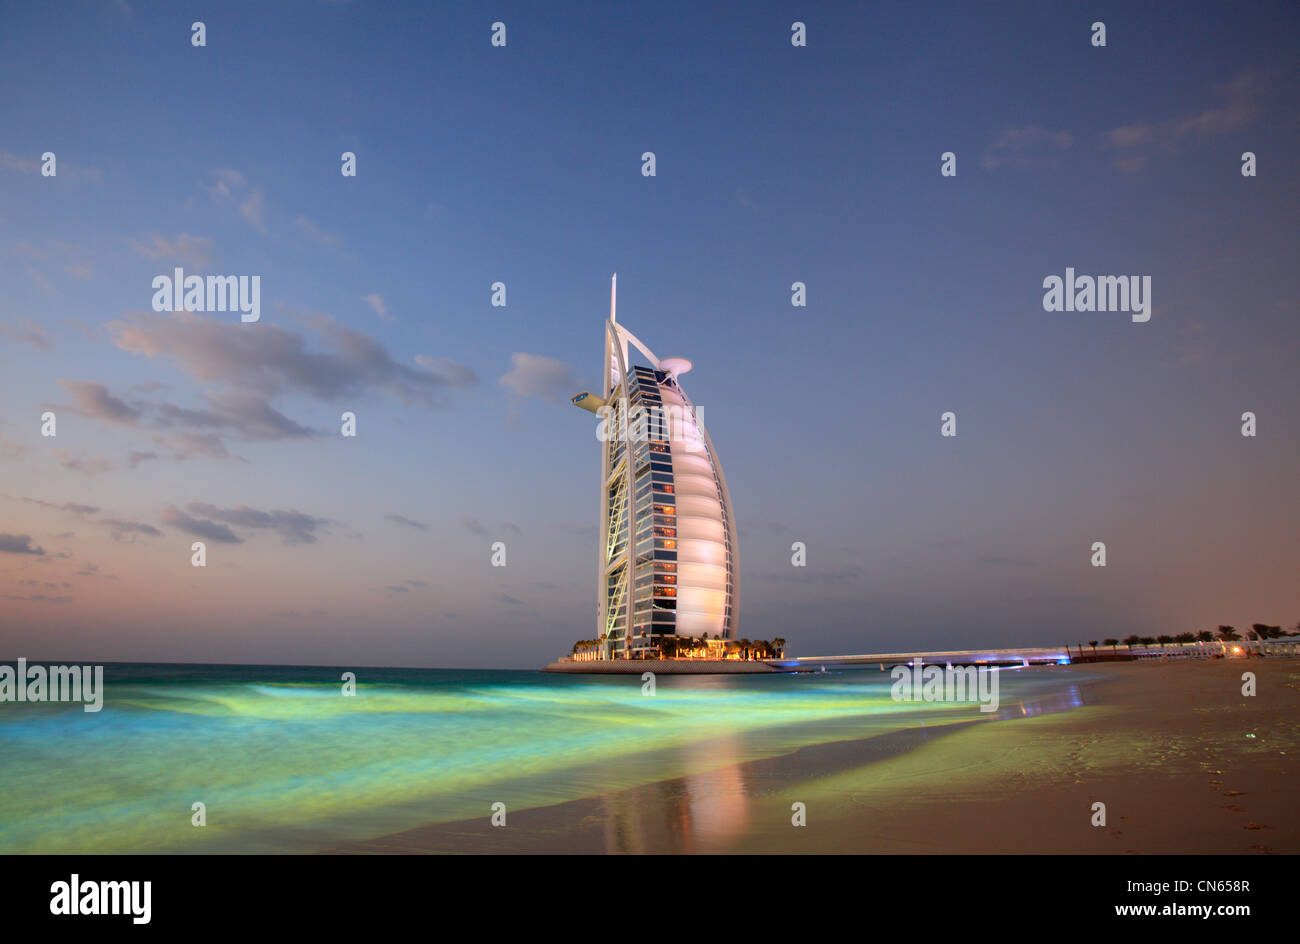 Burj Al Arab hotel with colored sea, Dubai, United Arab Emirates Stock Photo